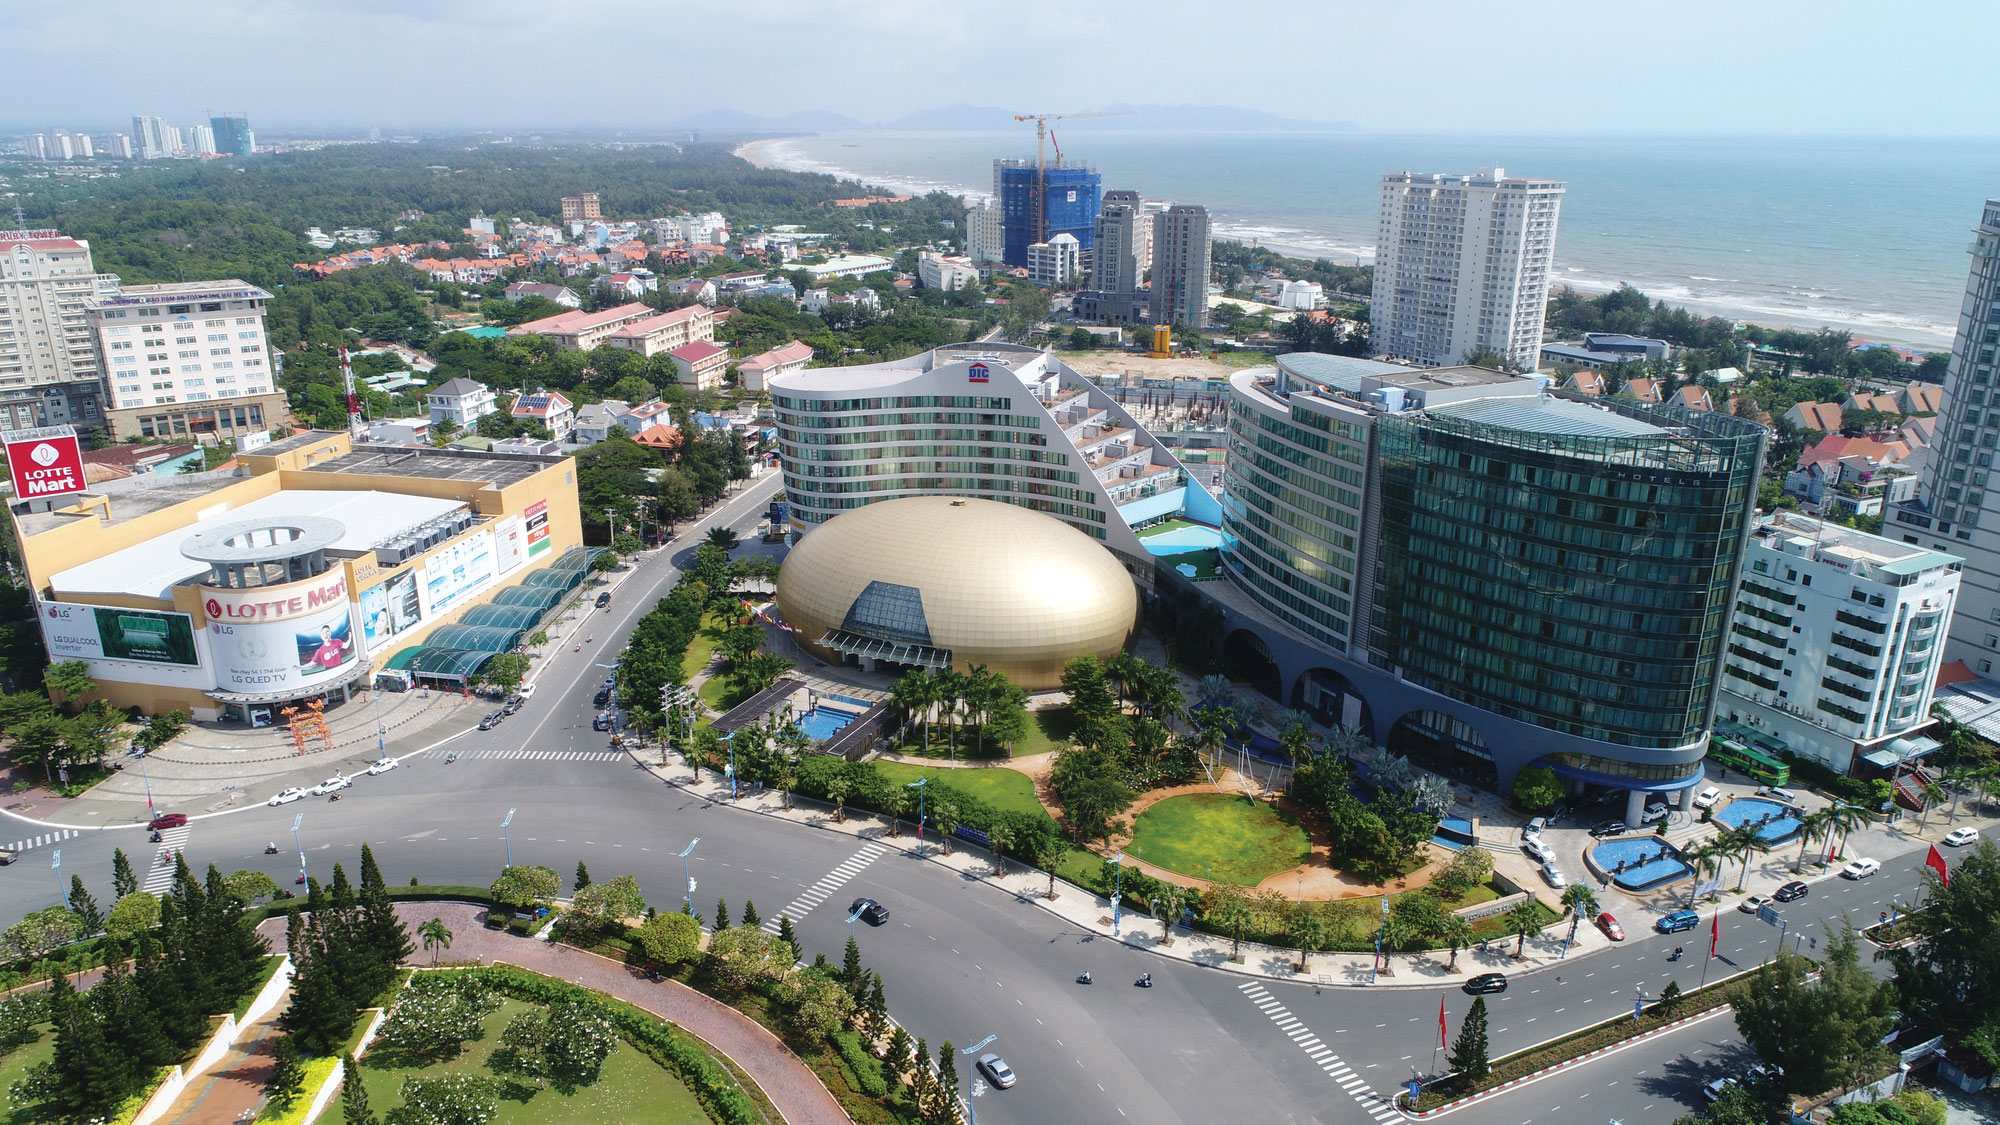 Bà Rịa - Vũng Tàu: 5 dự án khu đô thị, khu du lịch vào danh mục thu hồi đất năm 2020